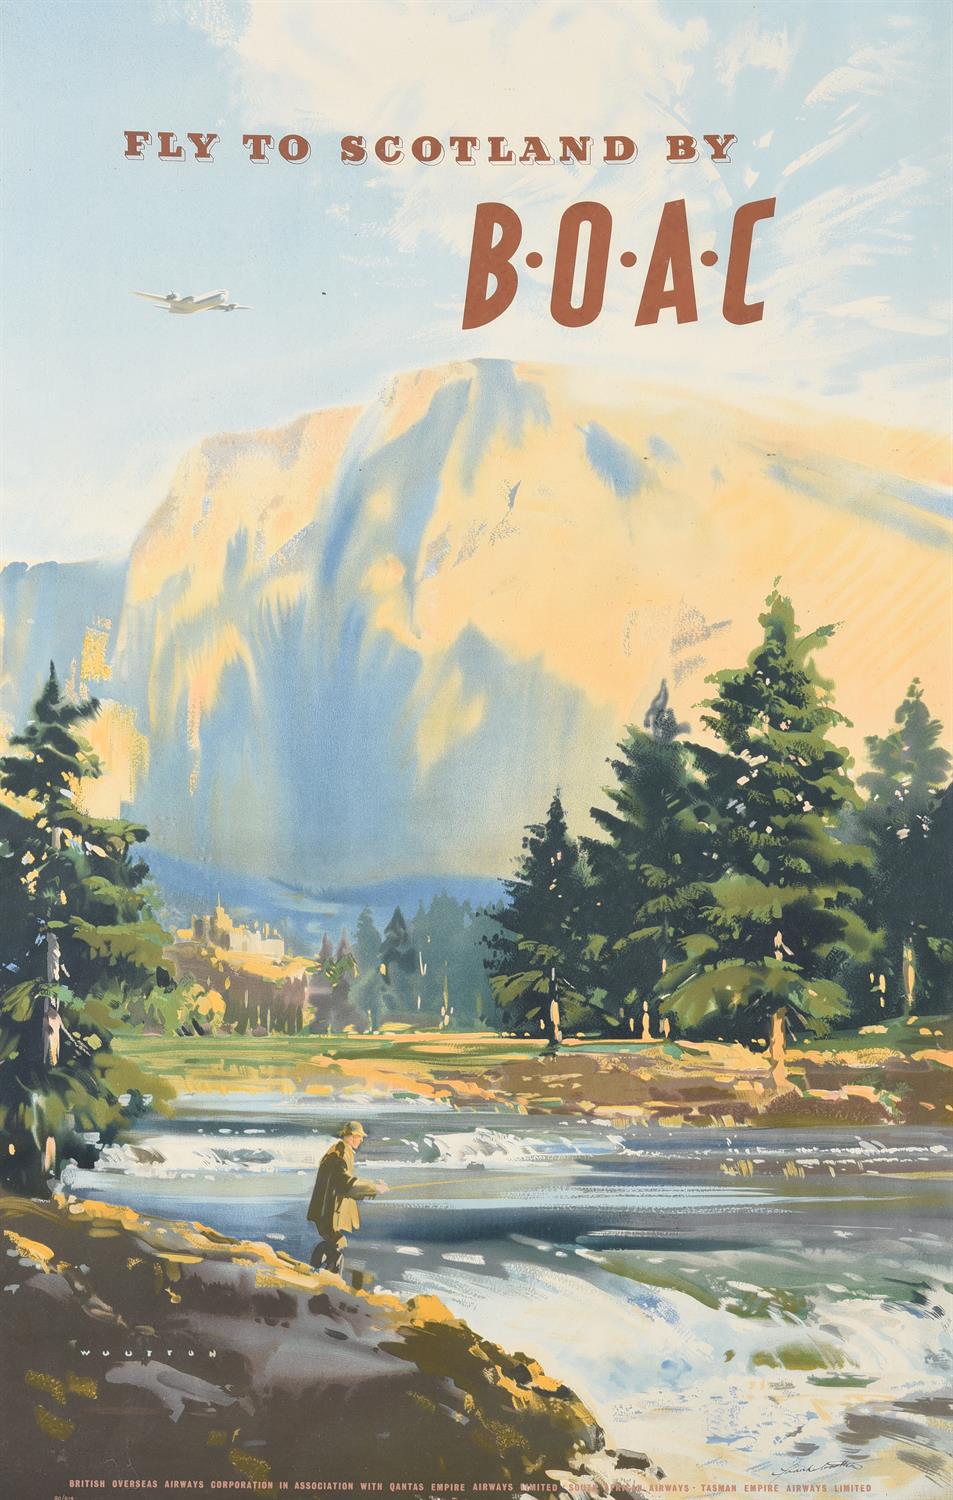 An original 1960's travel poster